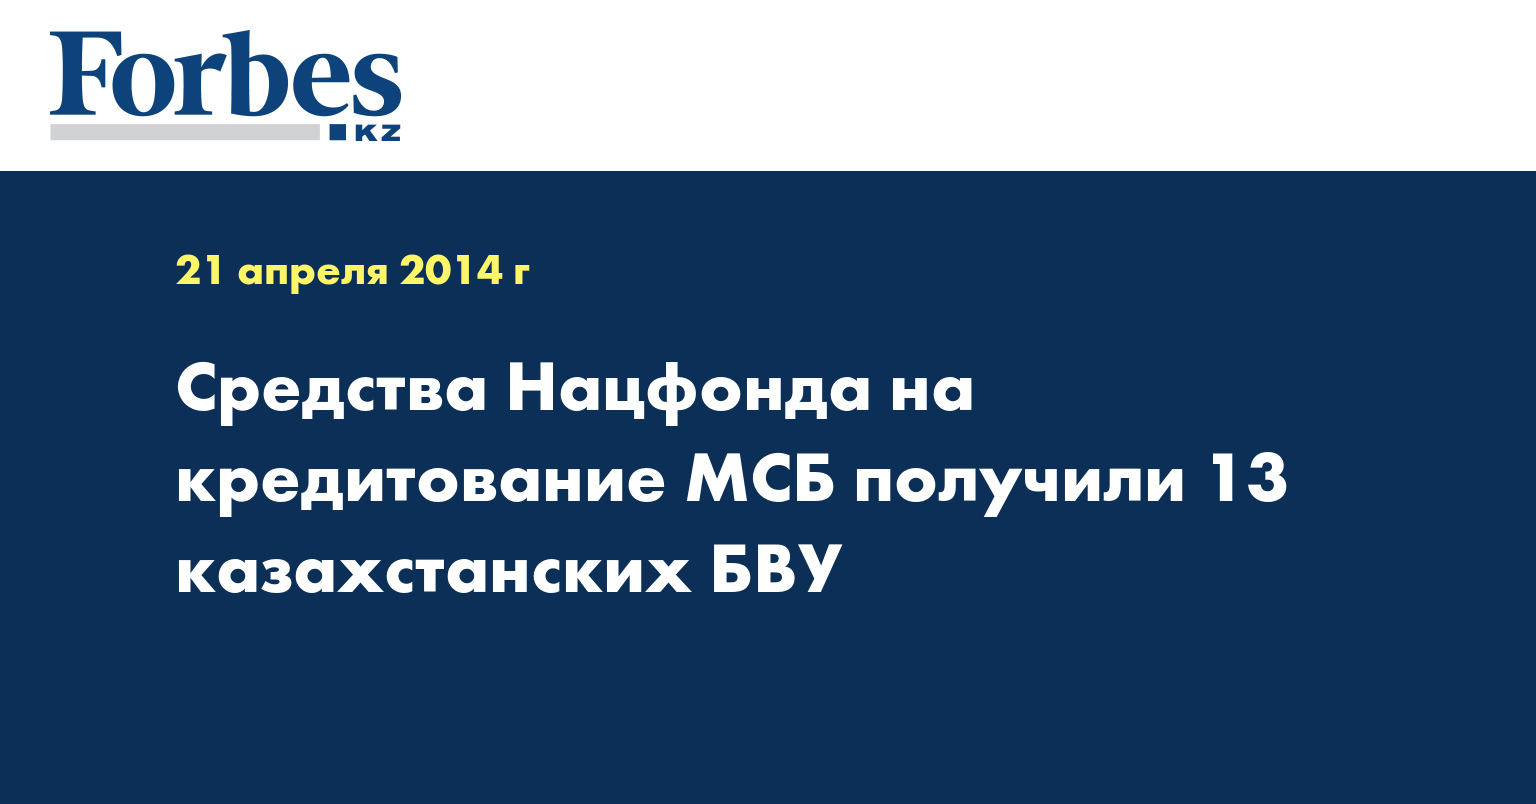 Средства Нацфонда на кредитование МСБ получили 13 казахстанских БВУ 